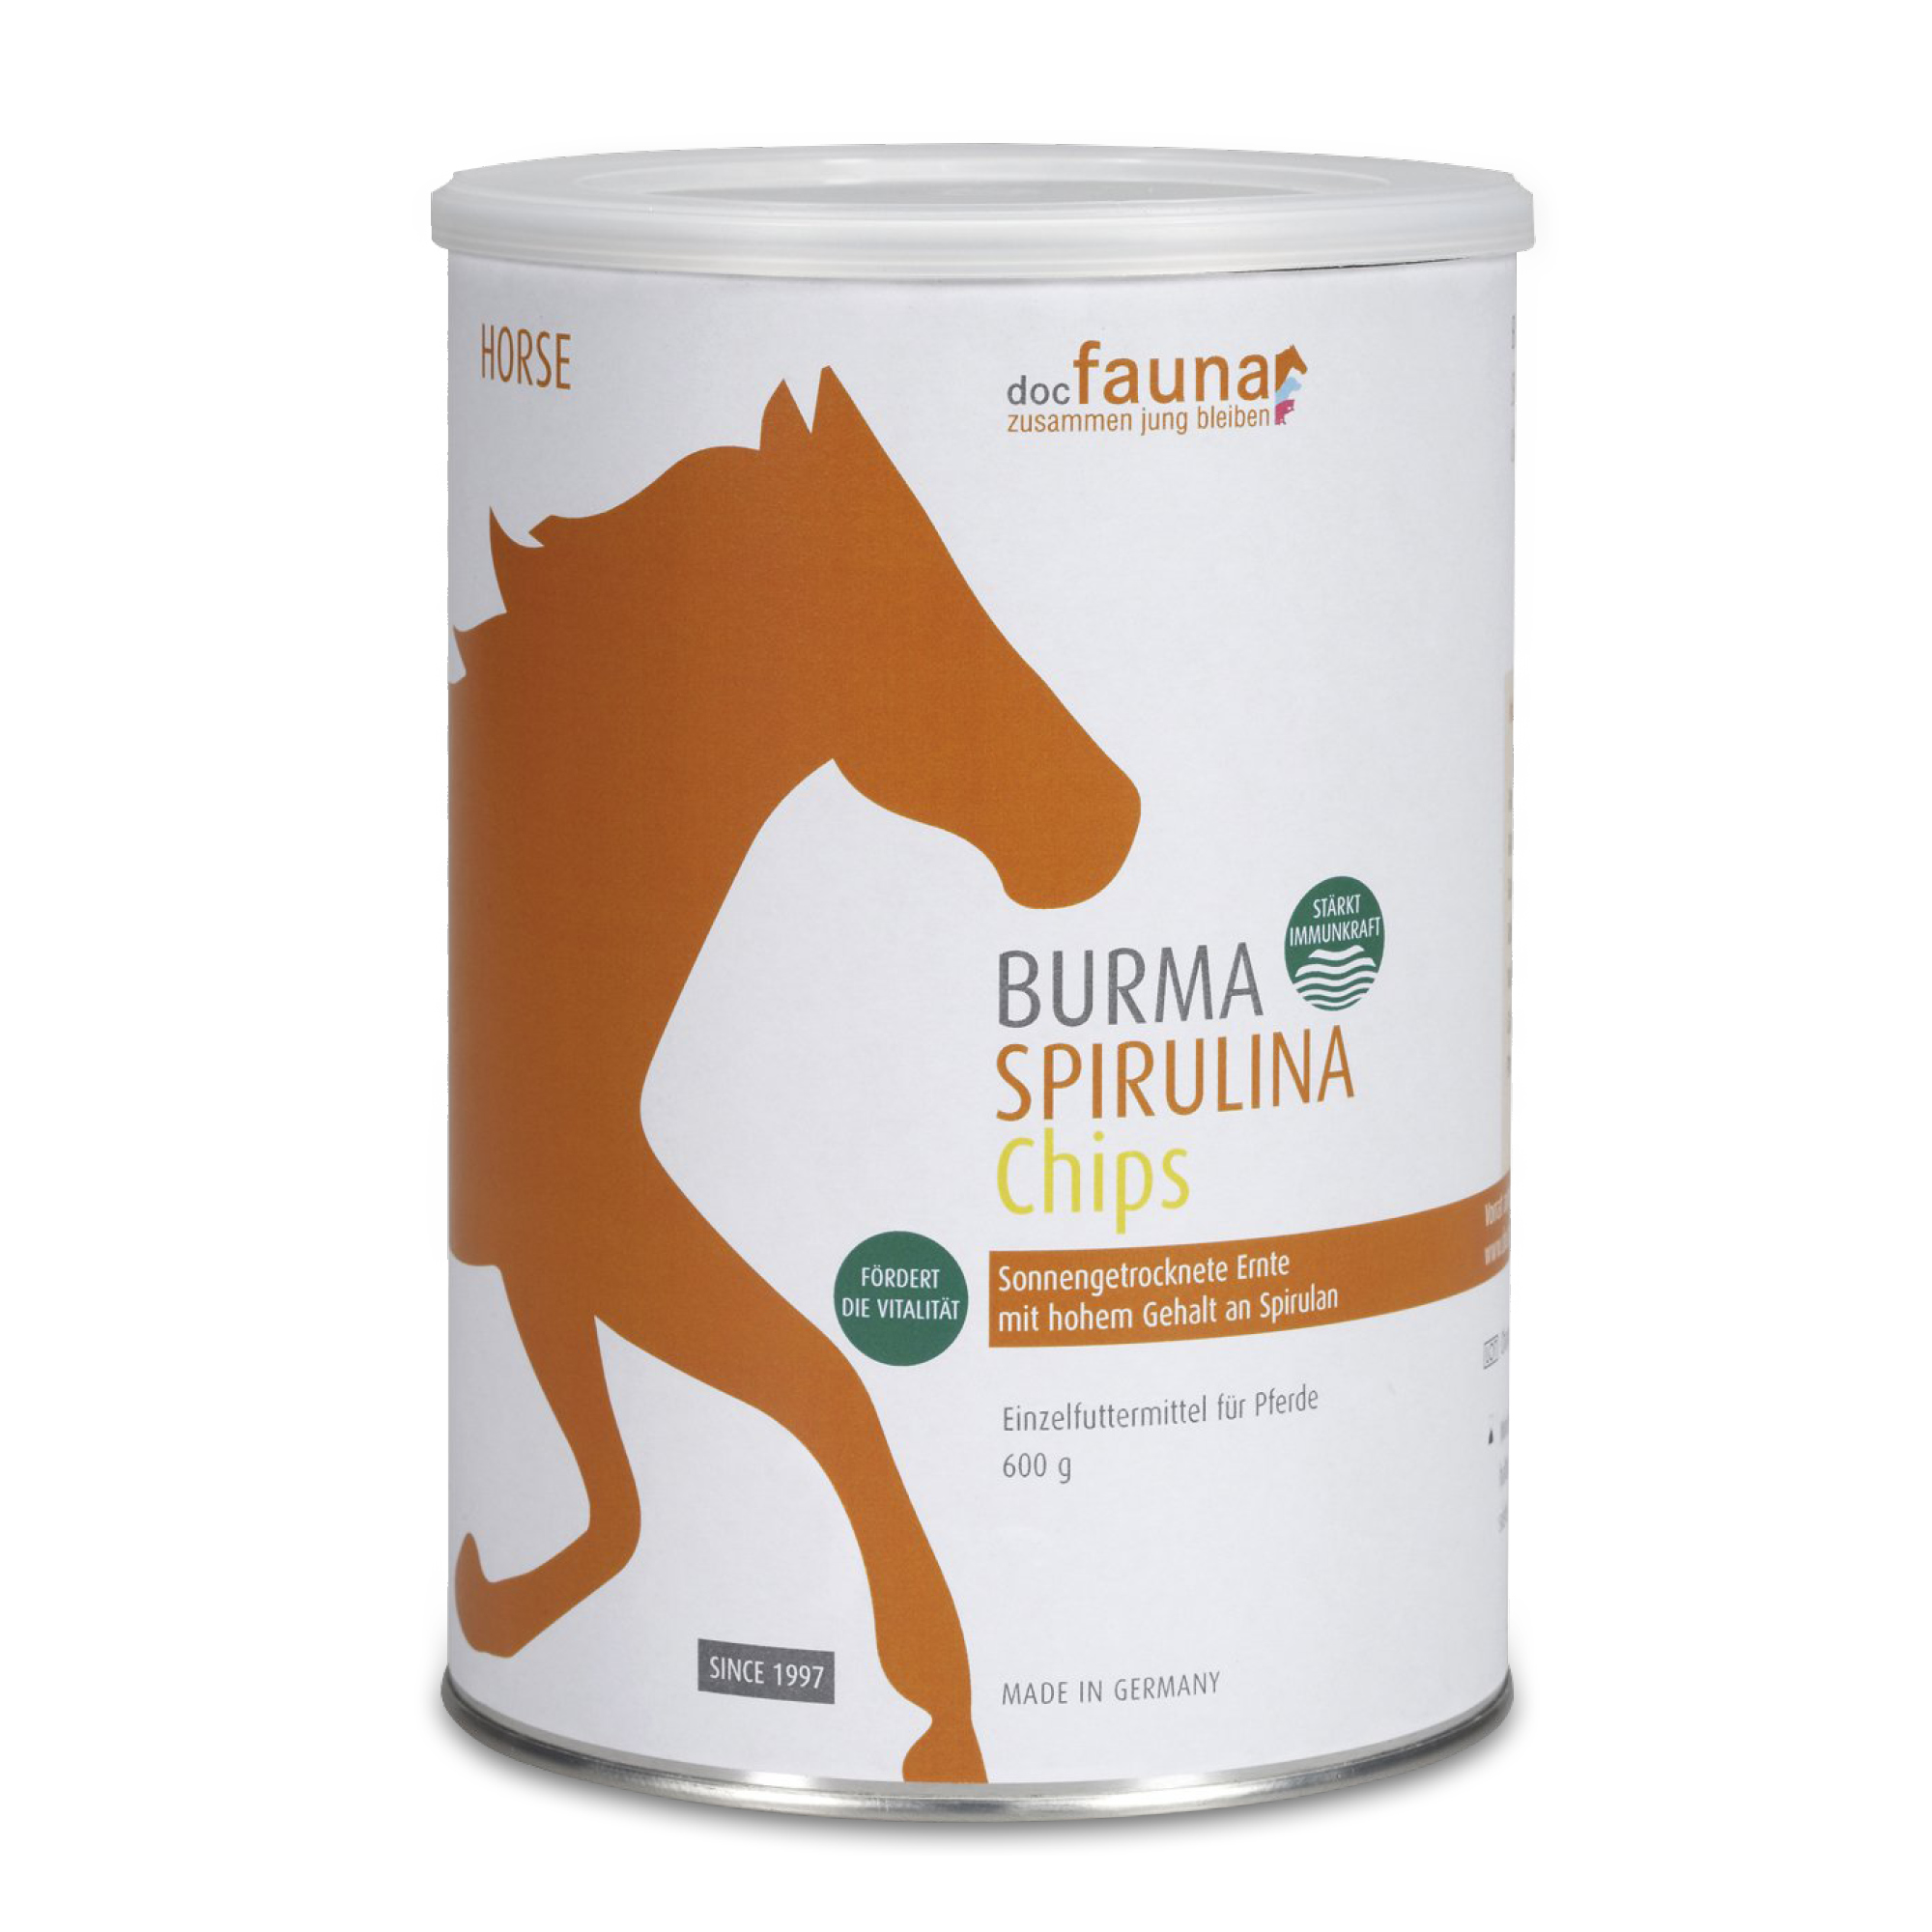 Burma Spirulina Chips Horse